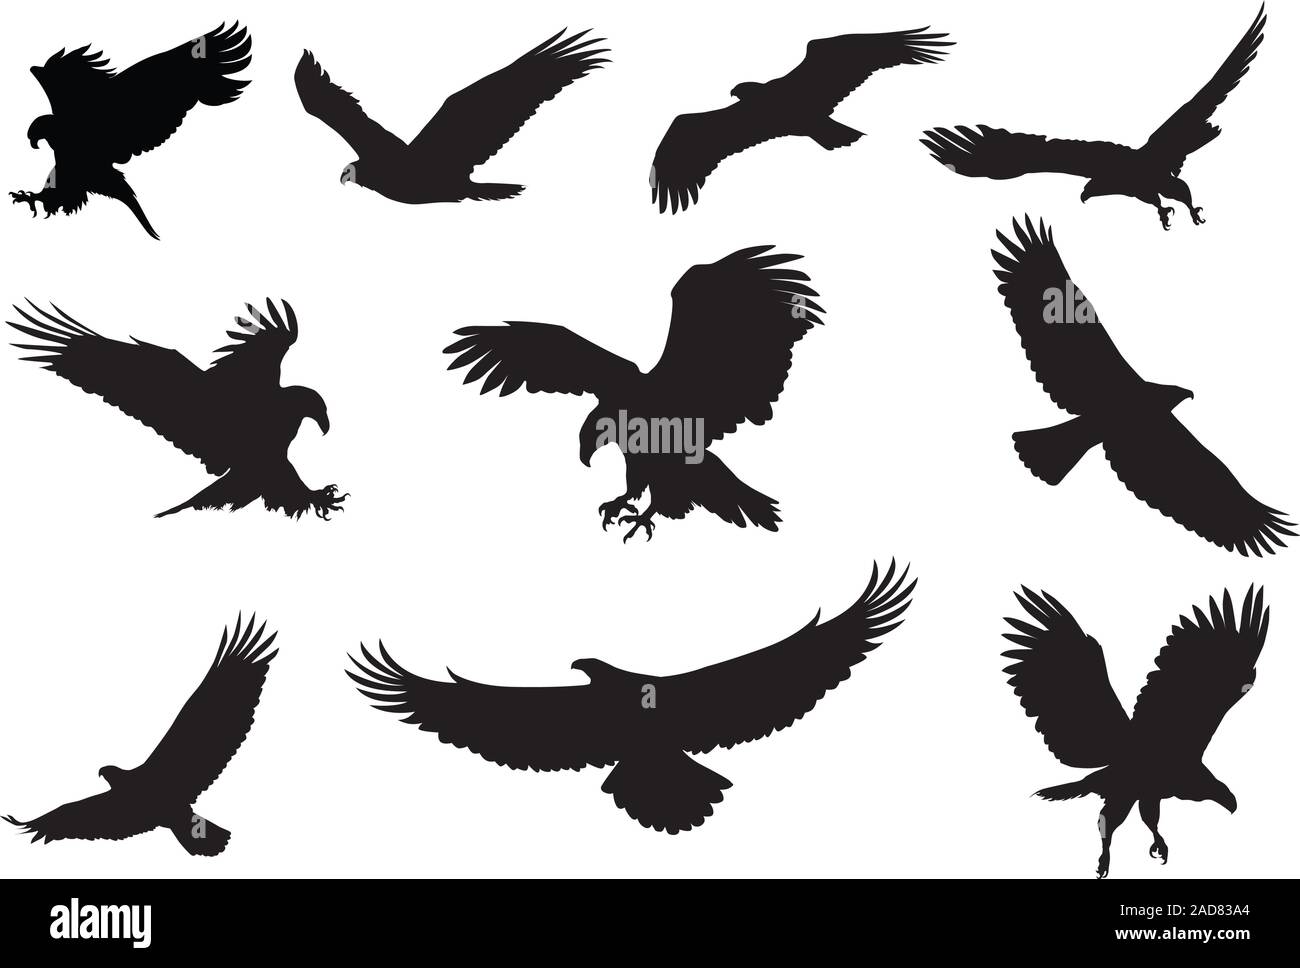 Fliegender Adler silhouette Vektor Stock Vektor